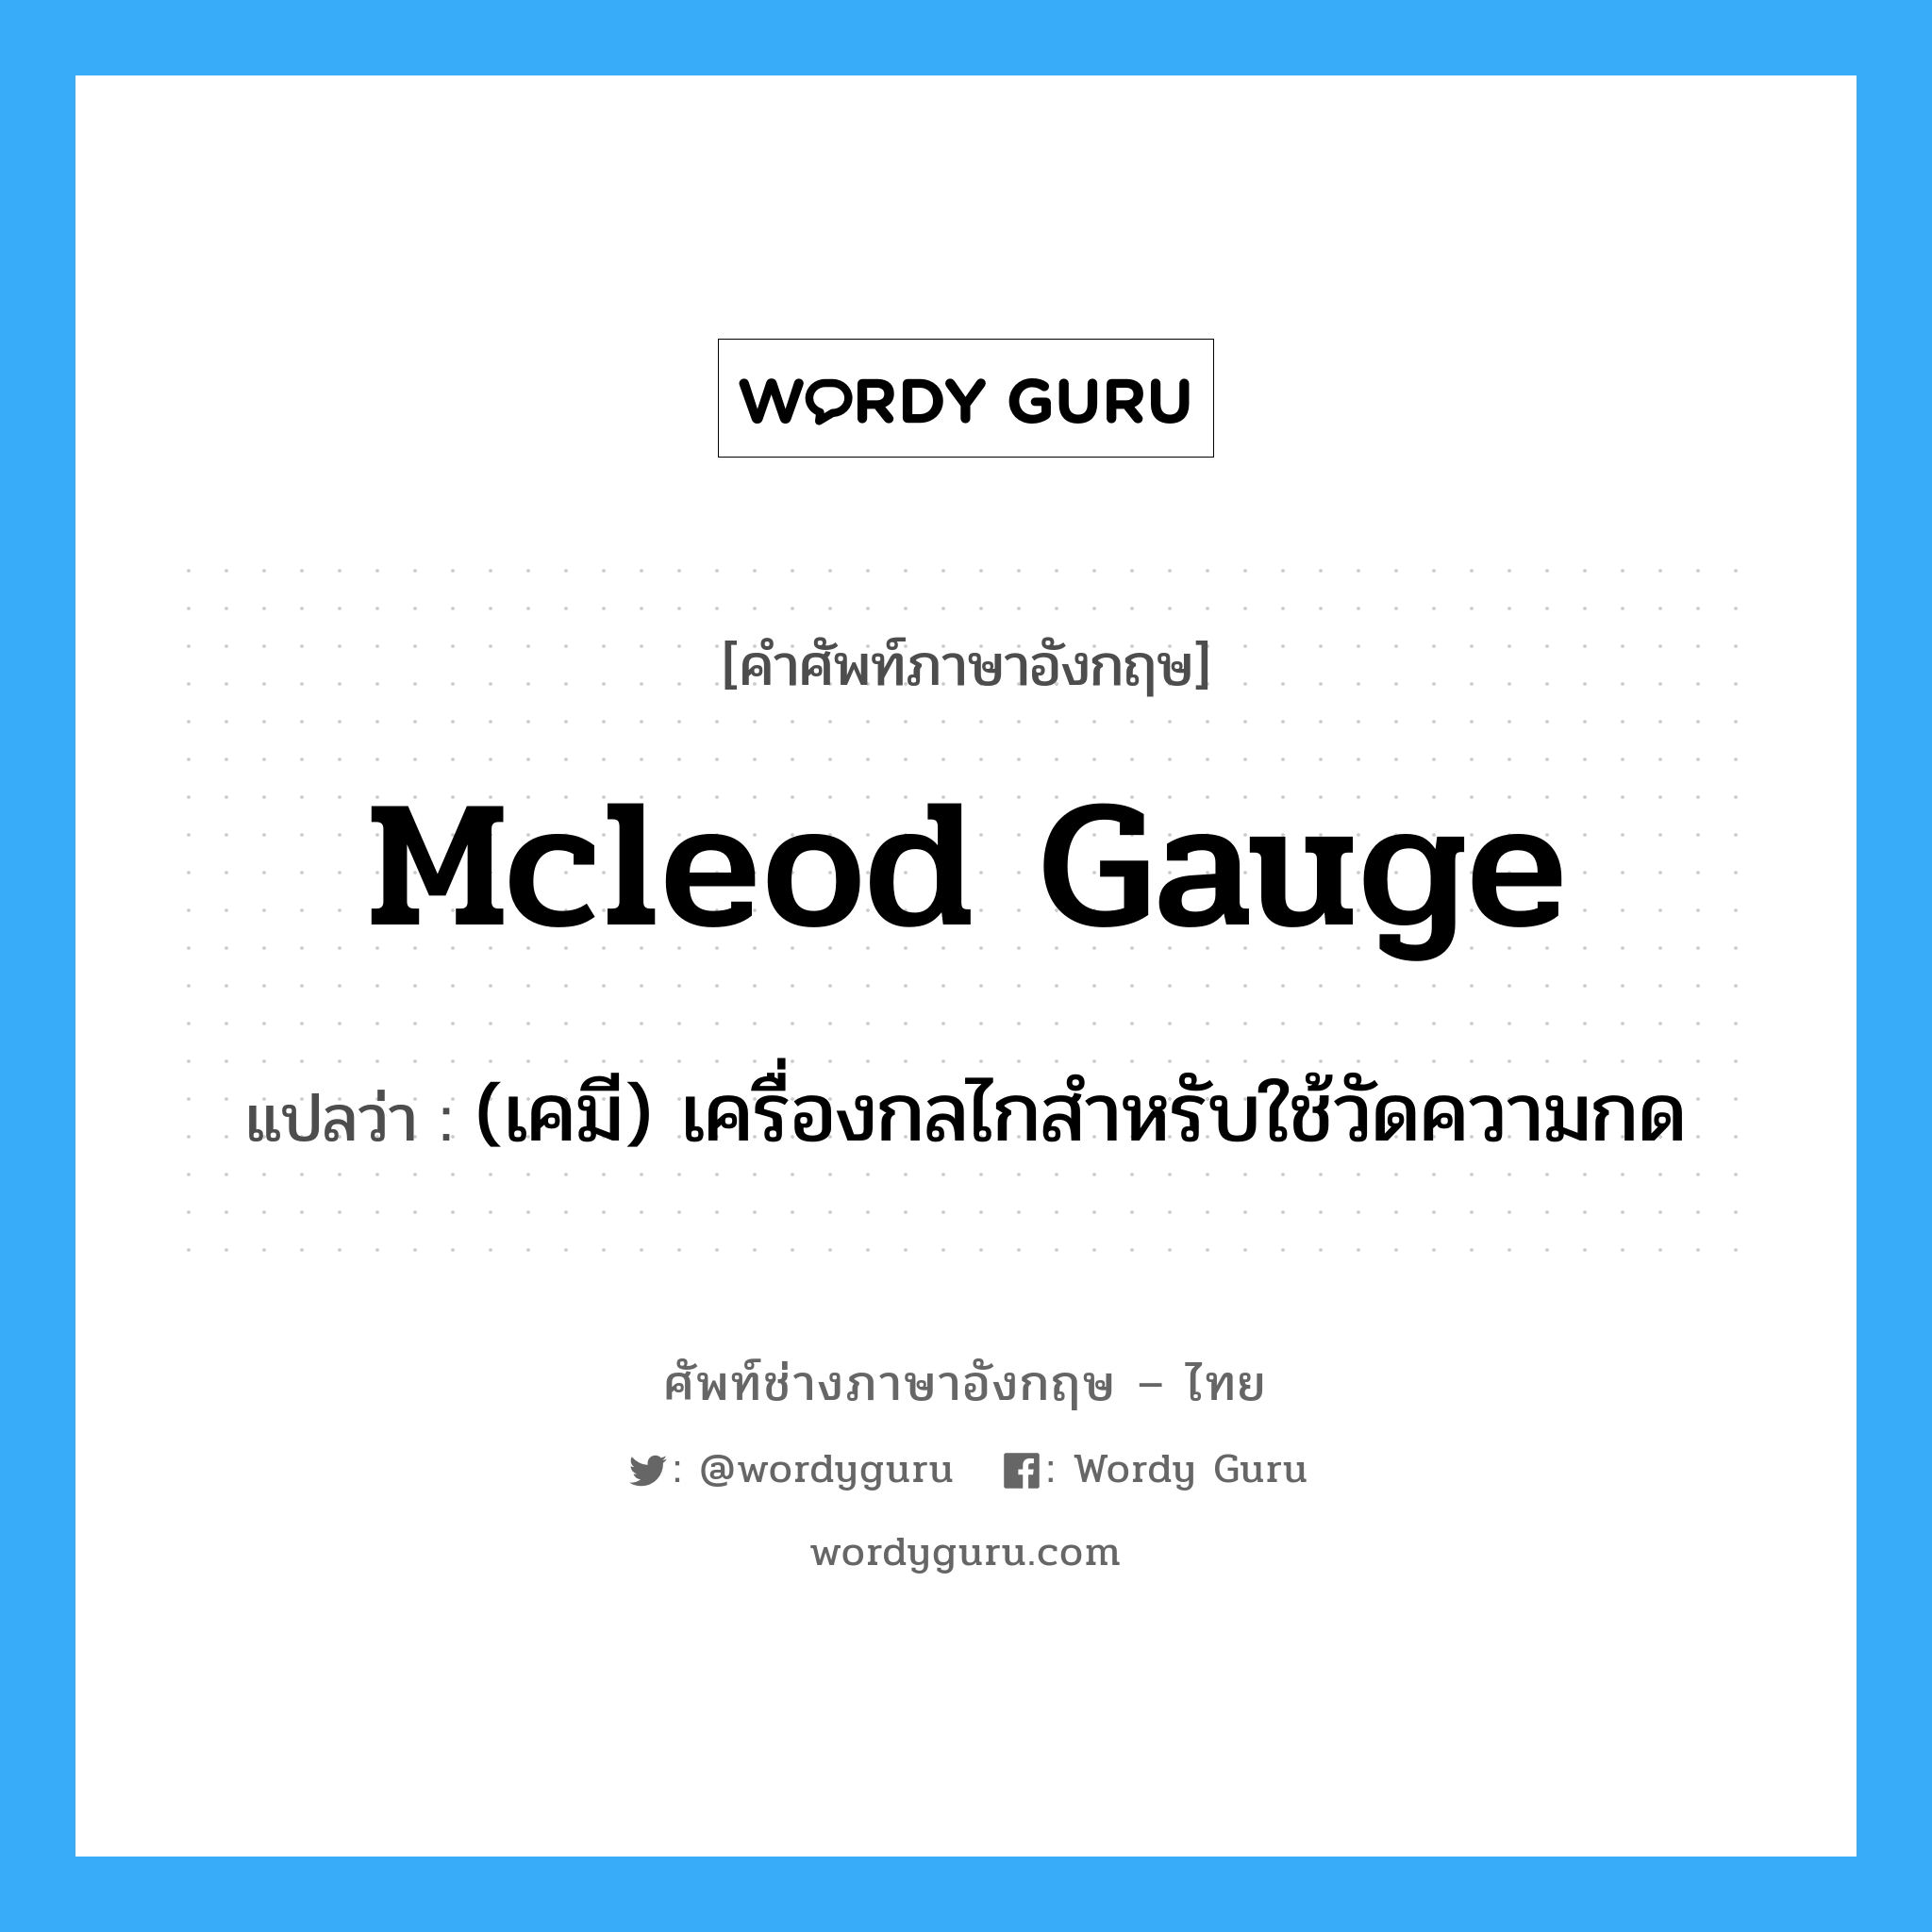 Mcleod gauge แปลว่า?, คำศัพท์ช่างภาษาอังกฤษ - ไทย Mcleod gauge คำศัพท์ภาษาอังกฤษ Mcleod gauge แปลว่า (เคมี) เครื่องกลไกสำหรับใช้วัดความกด